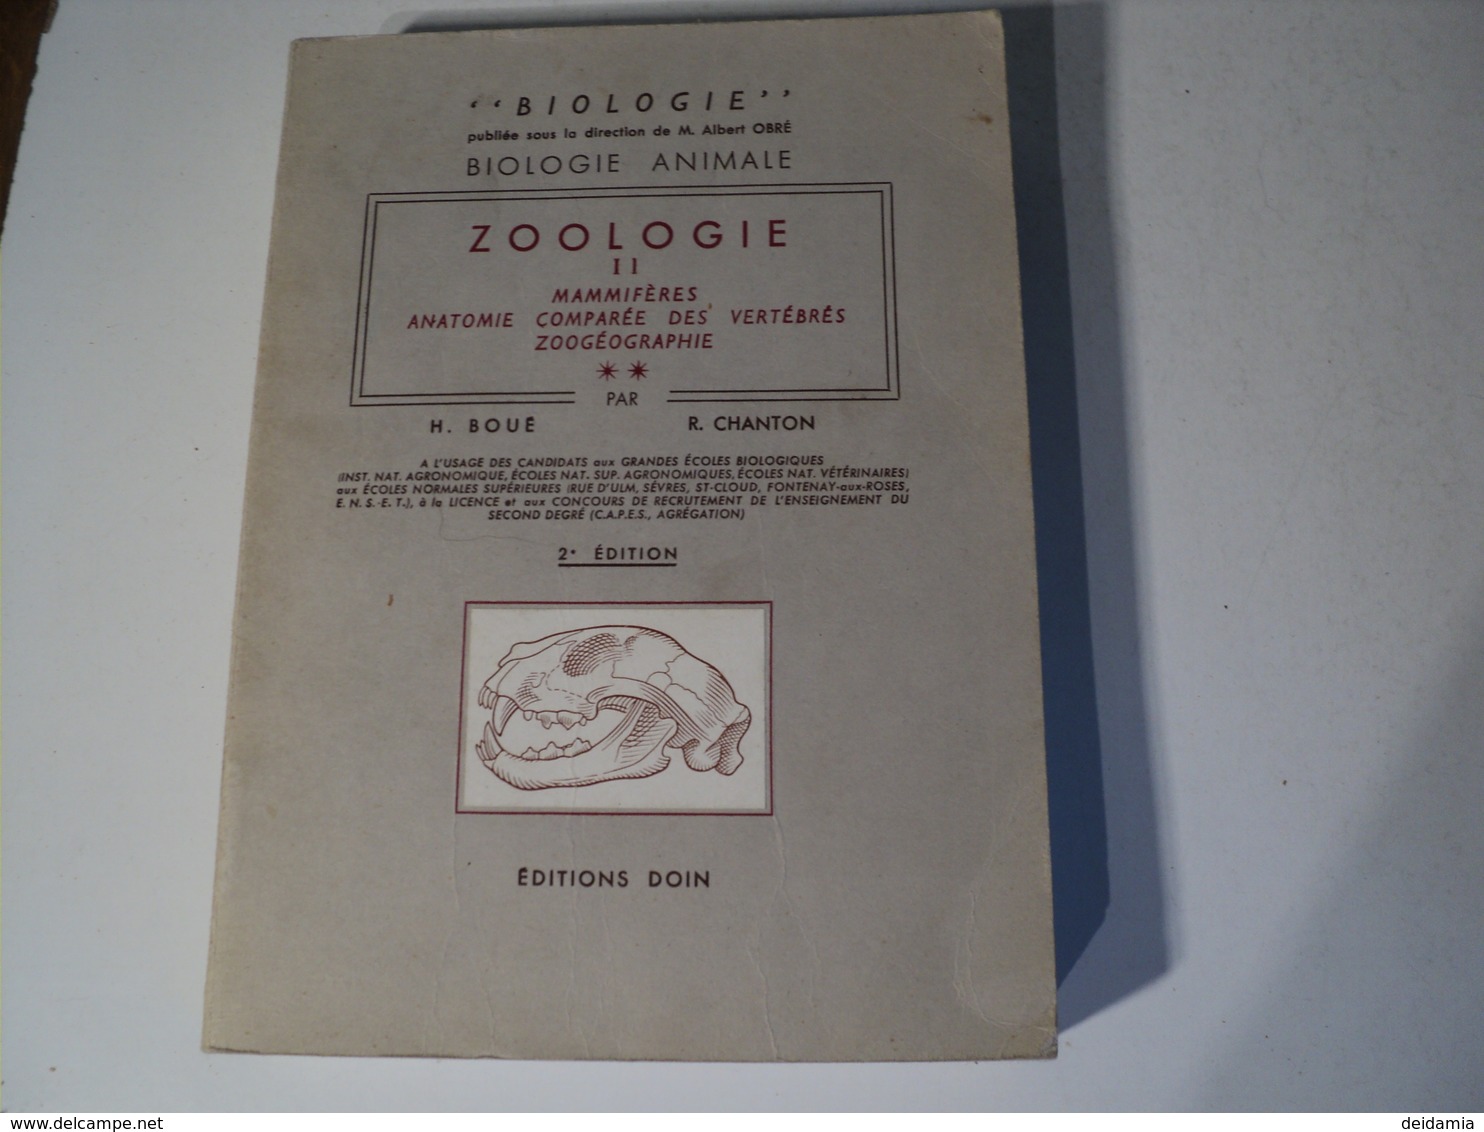 ZOOLOGIE TOME 2. MAMMIFERES. 1967. BIOLOGIE ANIMALE AUX EDITIONS DOIN PAR H. BOUE ET R. CHANTON. NOMBREUX SCHEMAS ET IL - 18 Ans Et Plus